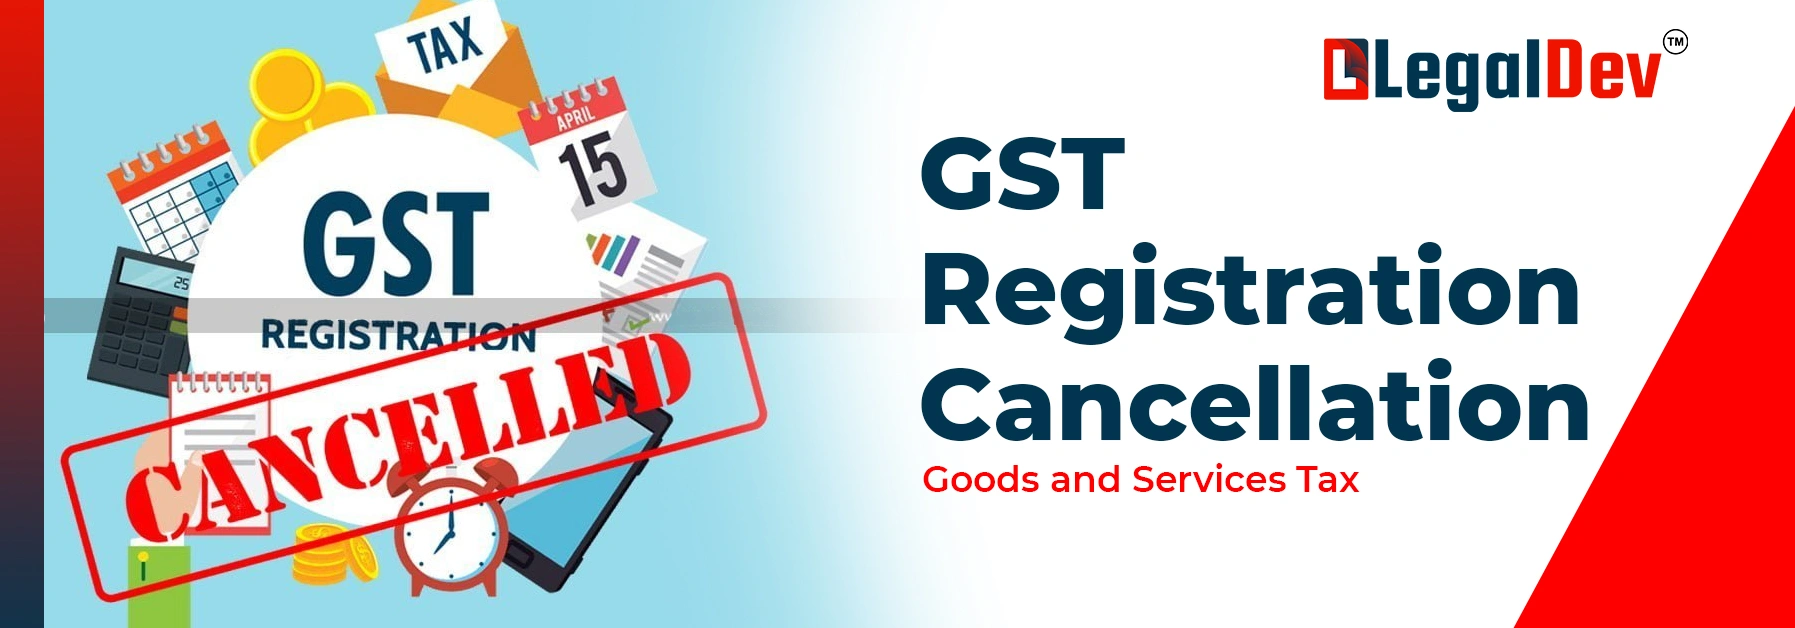 GST registration cancellation